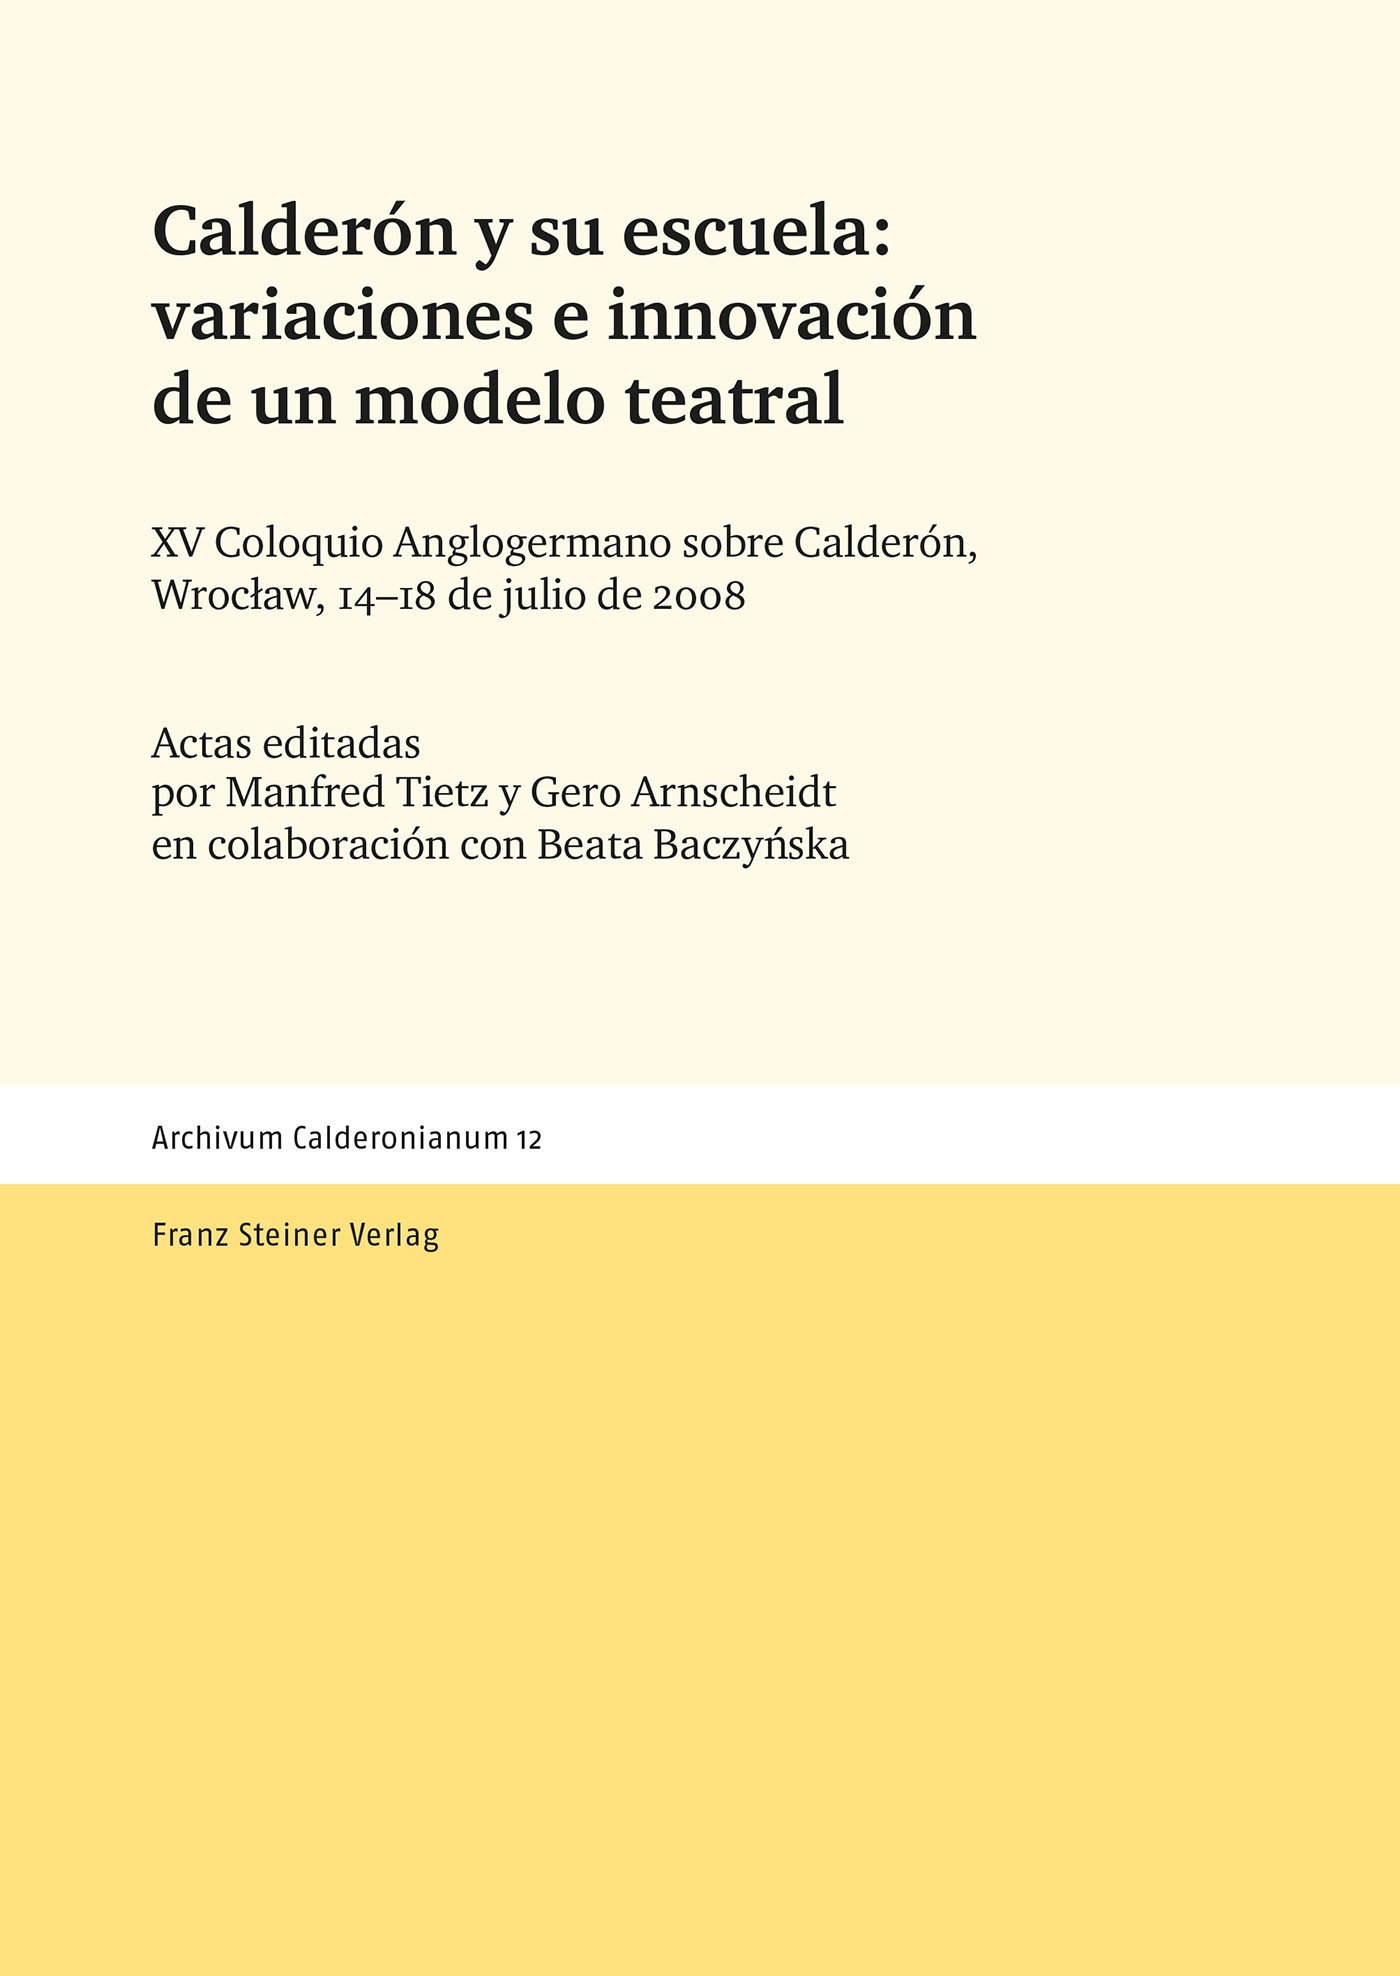 Calderón y su escuela: variaciones e innovación de un modelo teatral